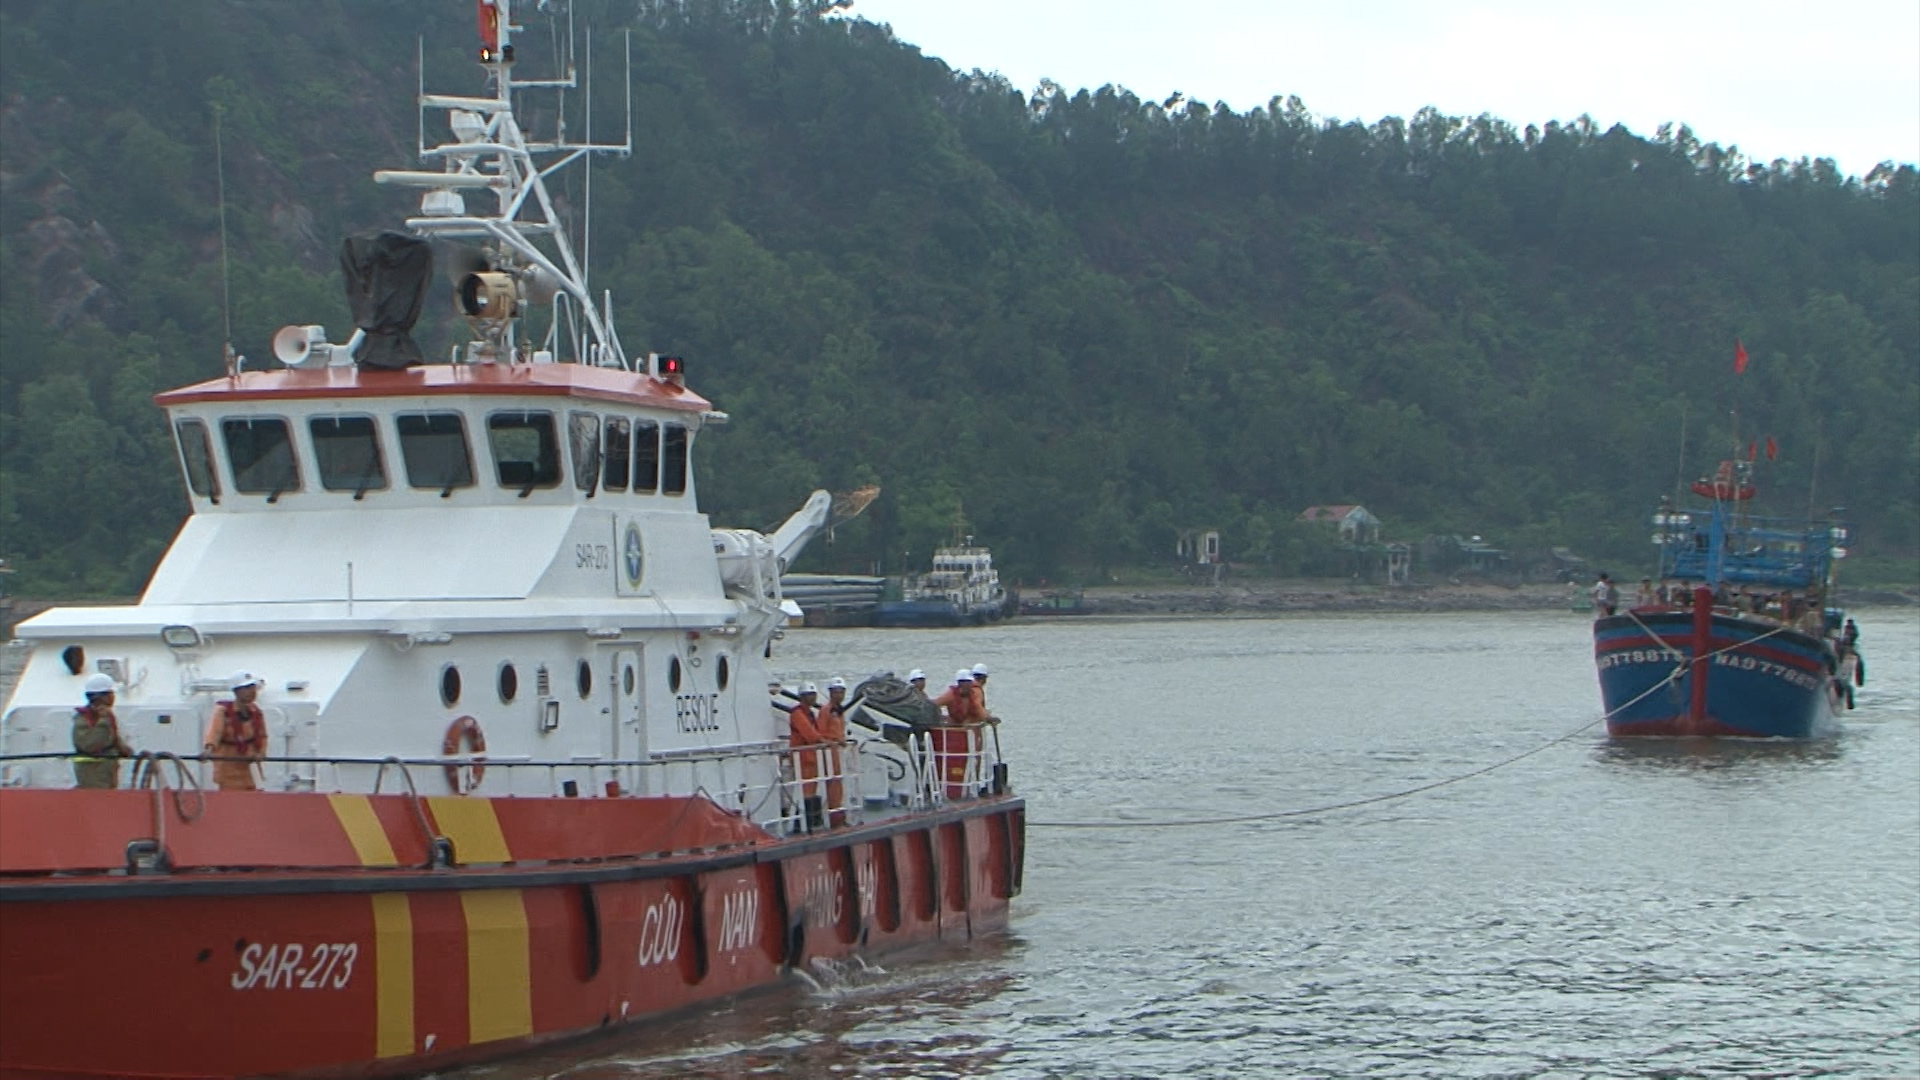 Tàu SAR 273 lai dắt tàu cá và ngư dân gặp nạn vào bờ